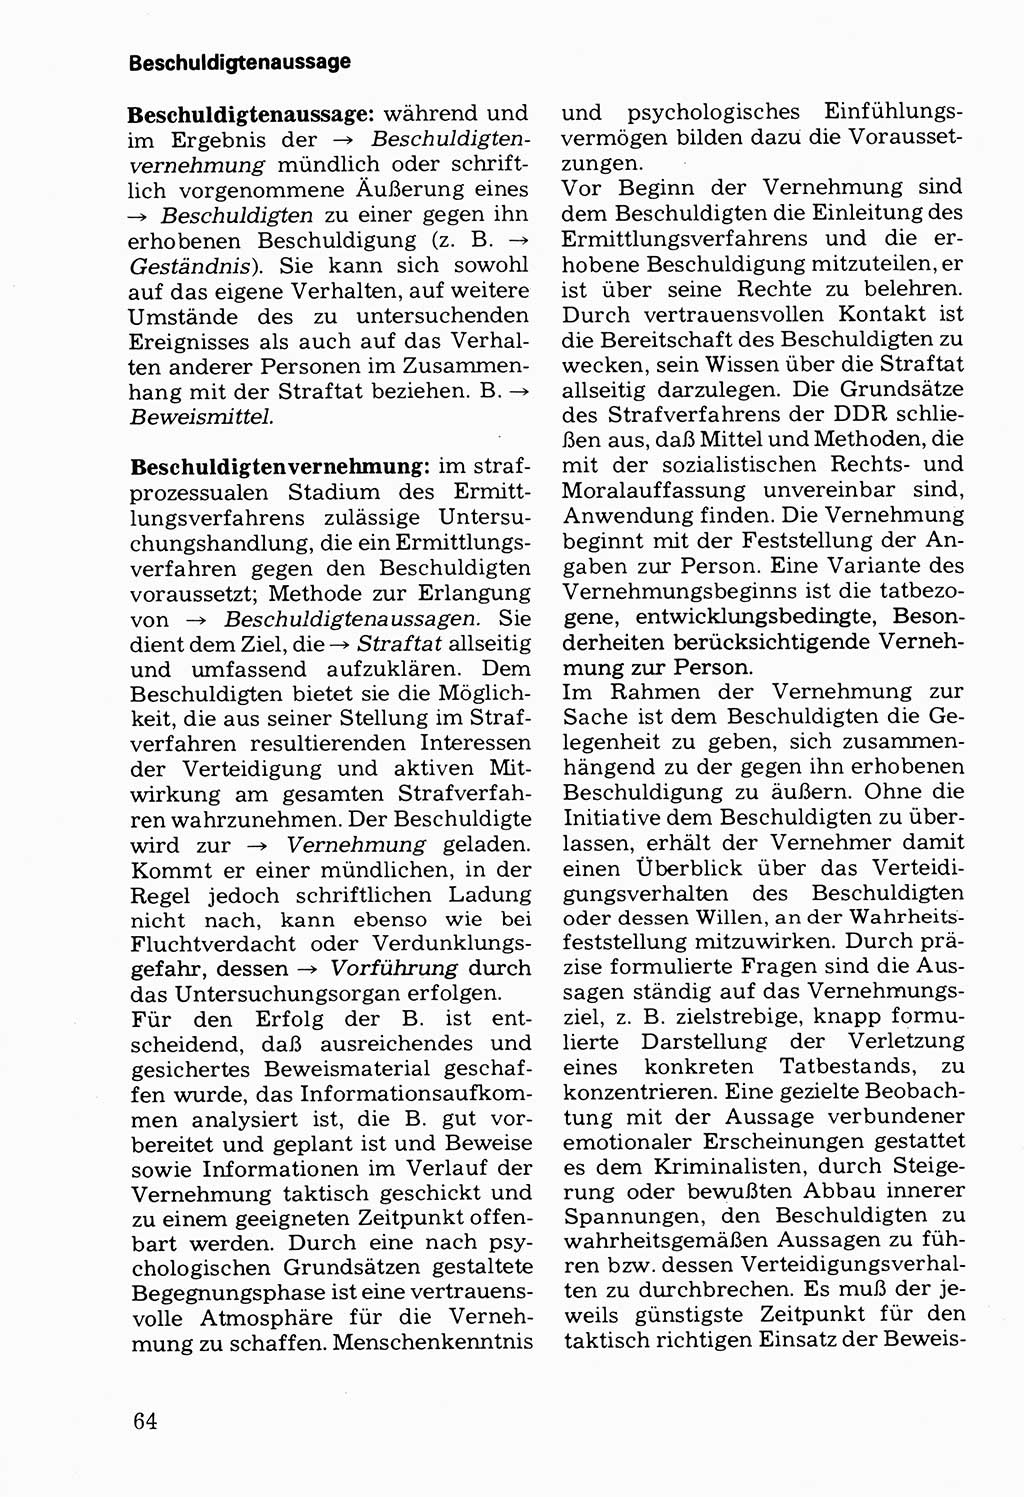 Wörterbuch der sozialistischen Kriminalistik [Deutsche Demokratische Republik (DDR)] 1981, Seite 64 (Wb. soz. Krim. DDR 1981, S. 64)